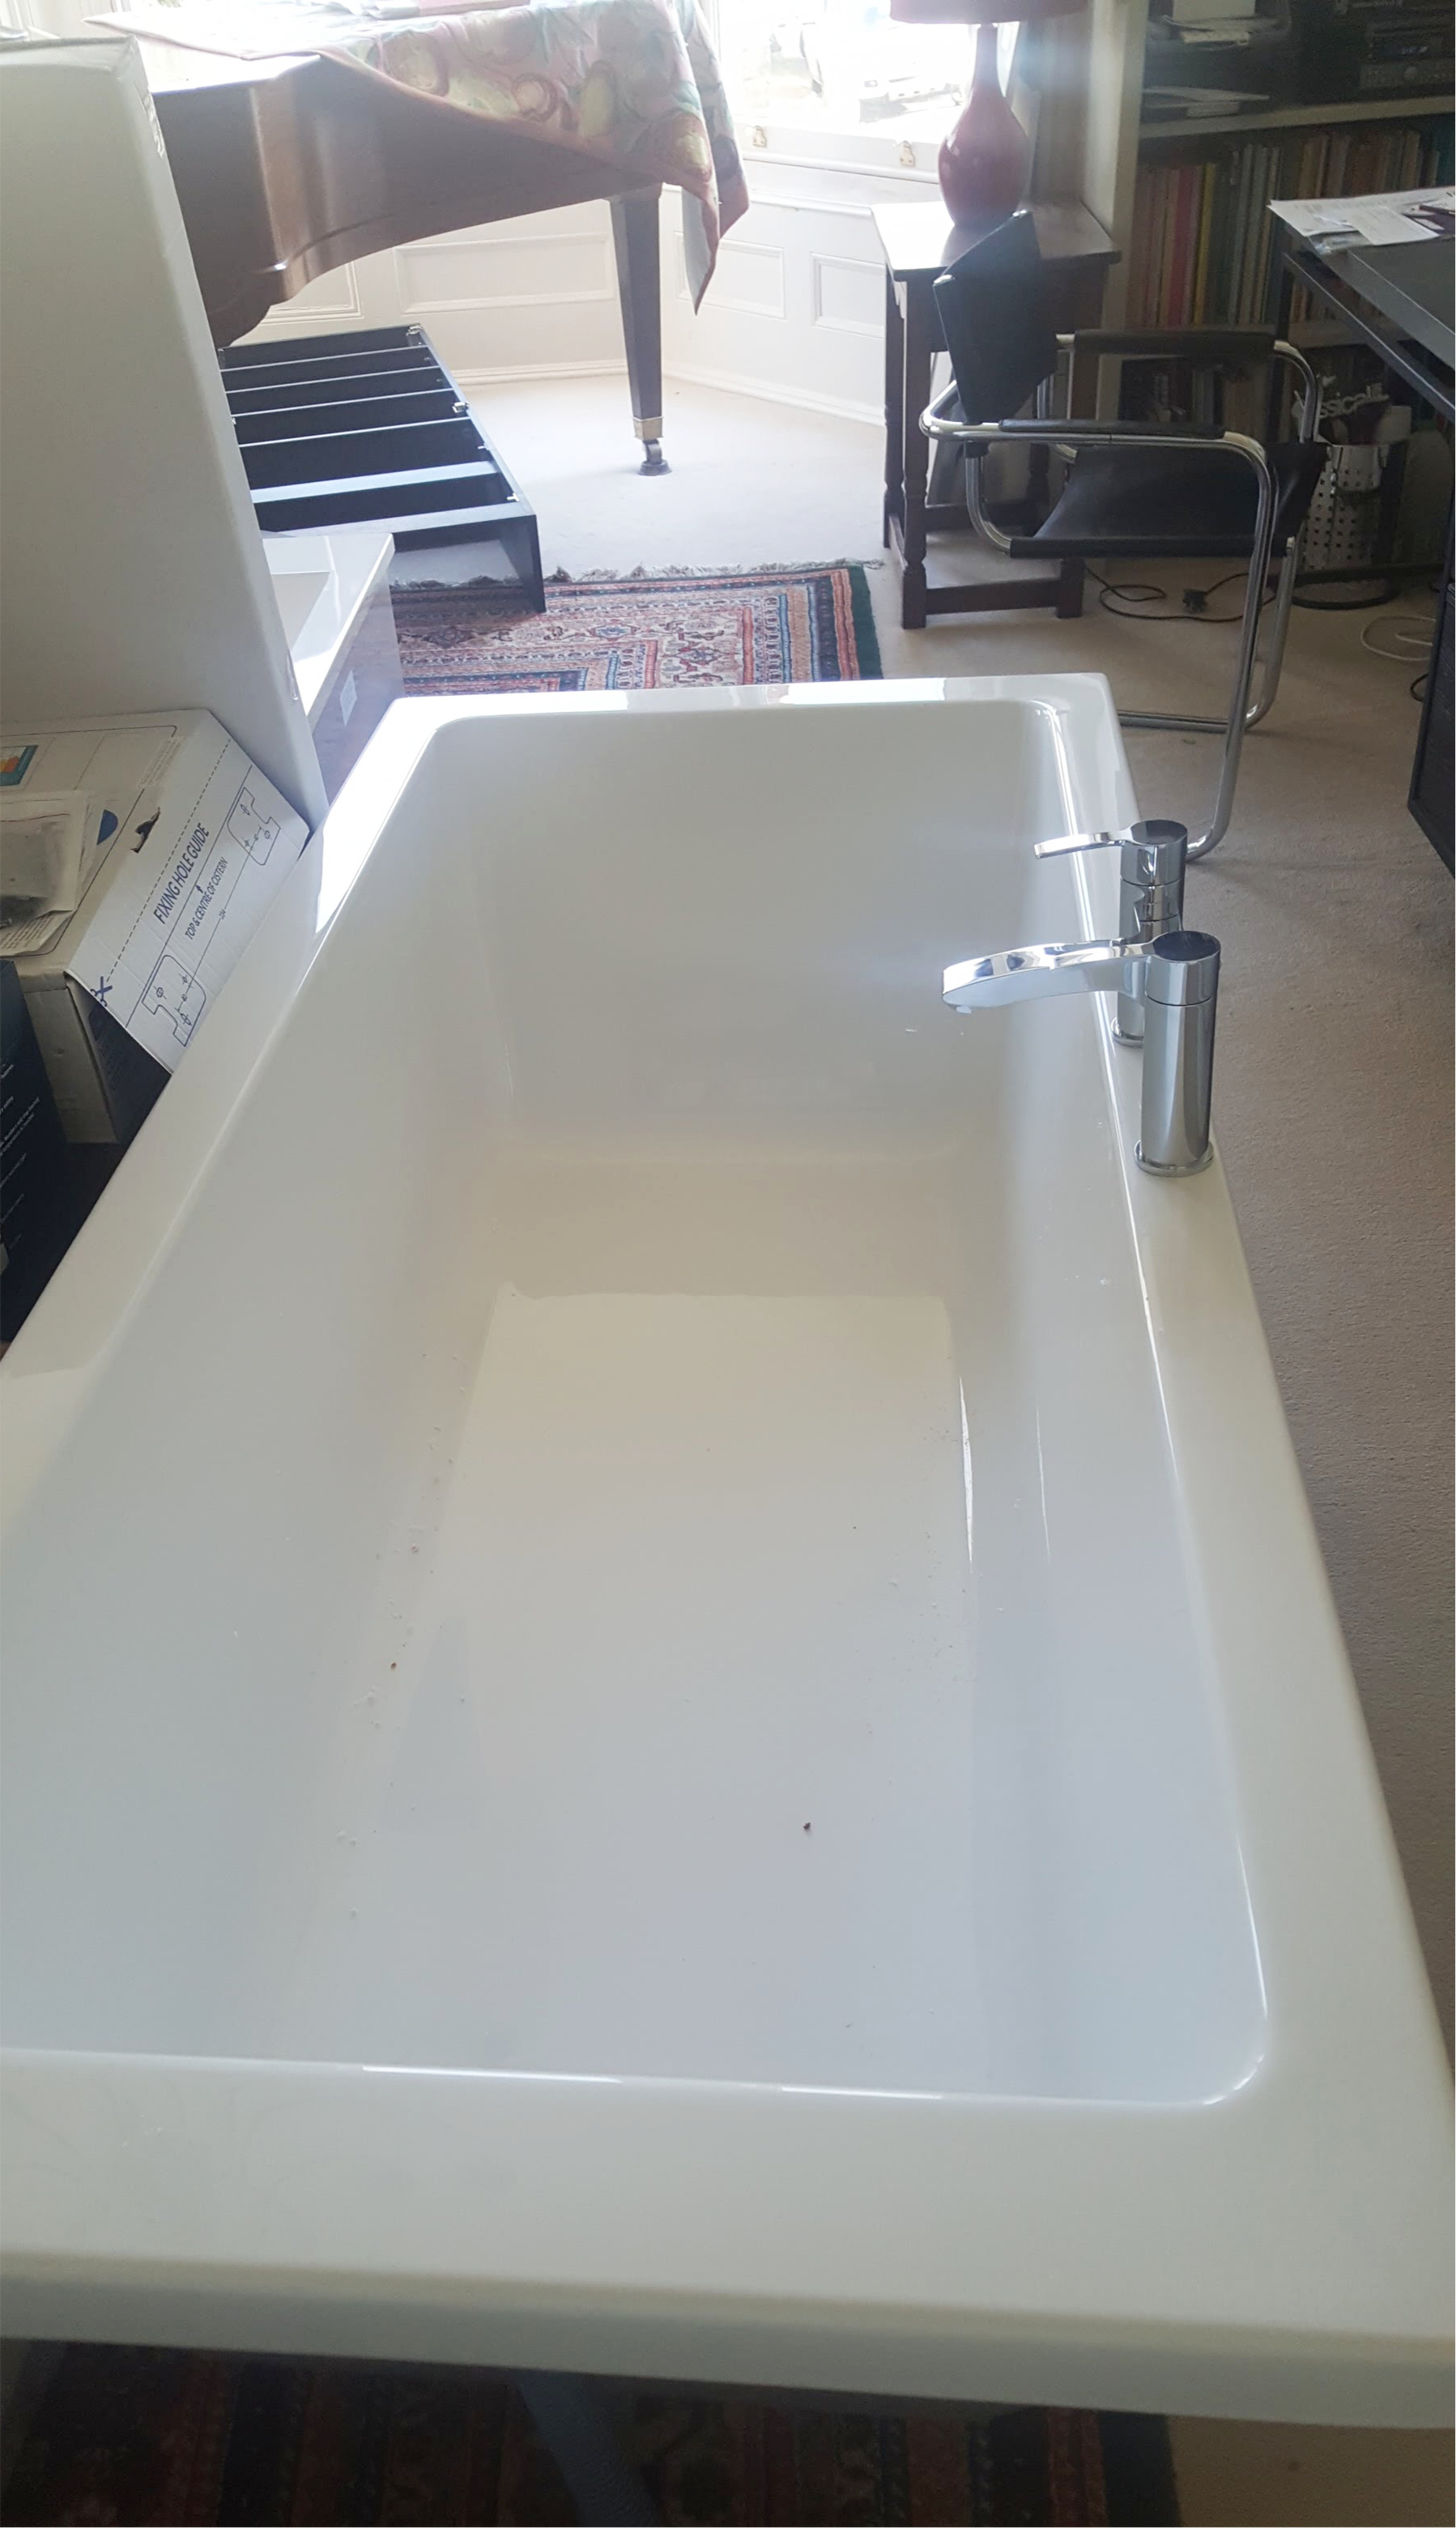 New bath